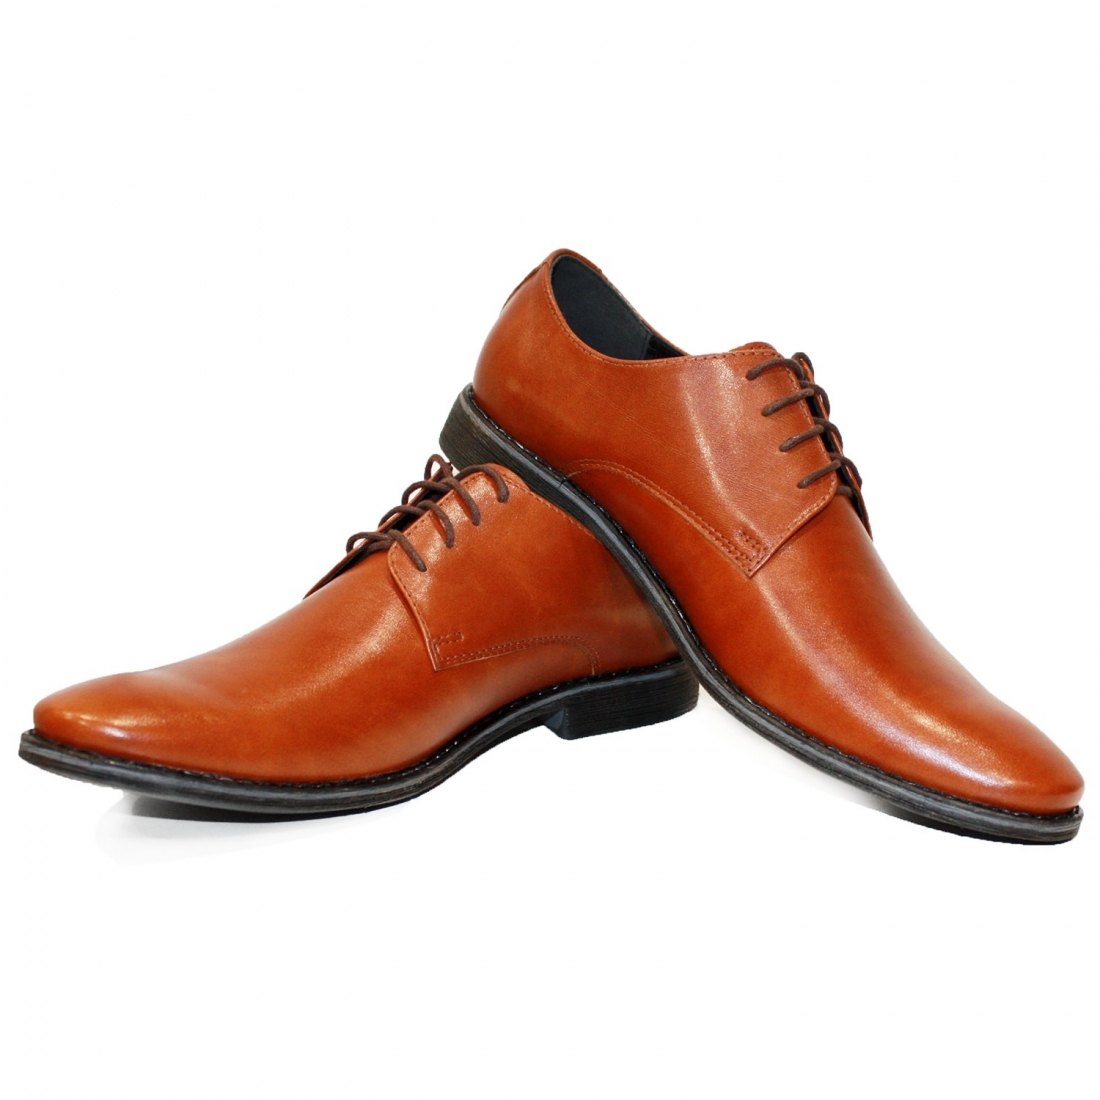 Modello Kosello - Zapatos Clásicos - Handmade Colorful Italian Leather Shoes